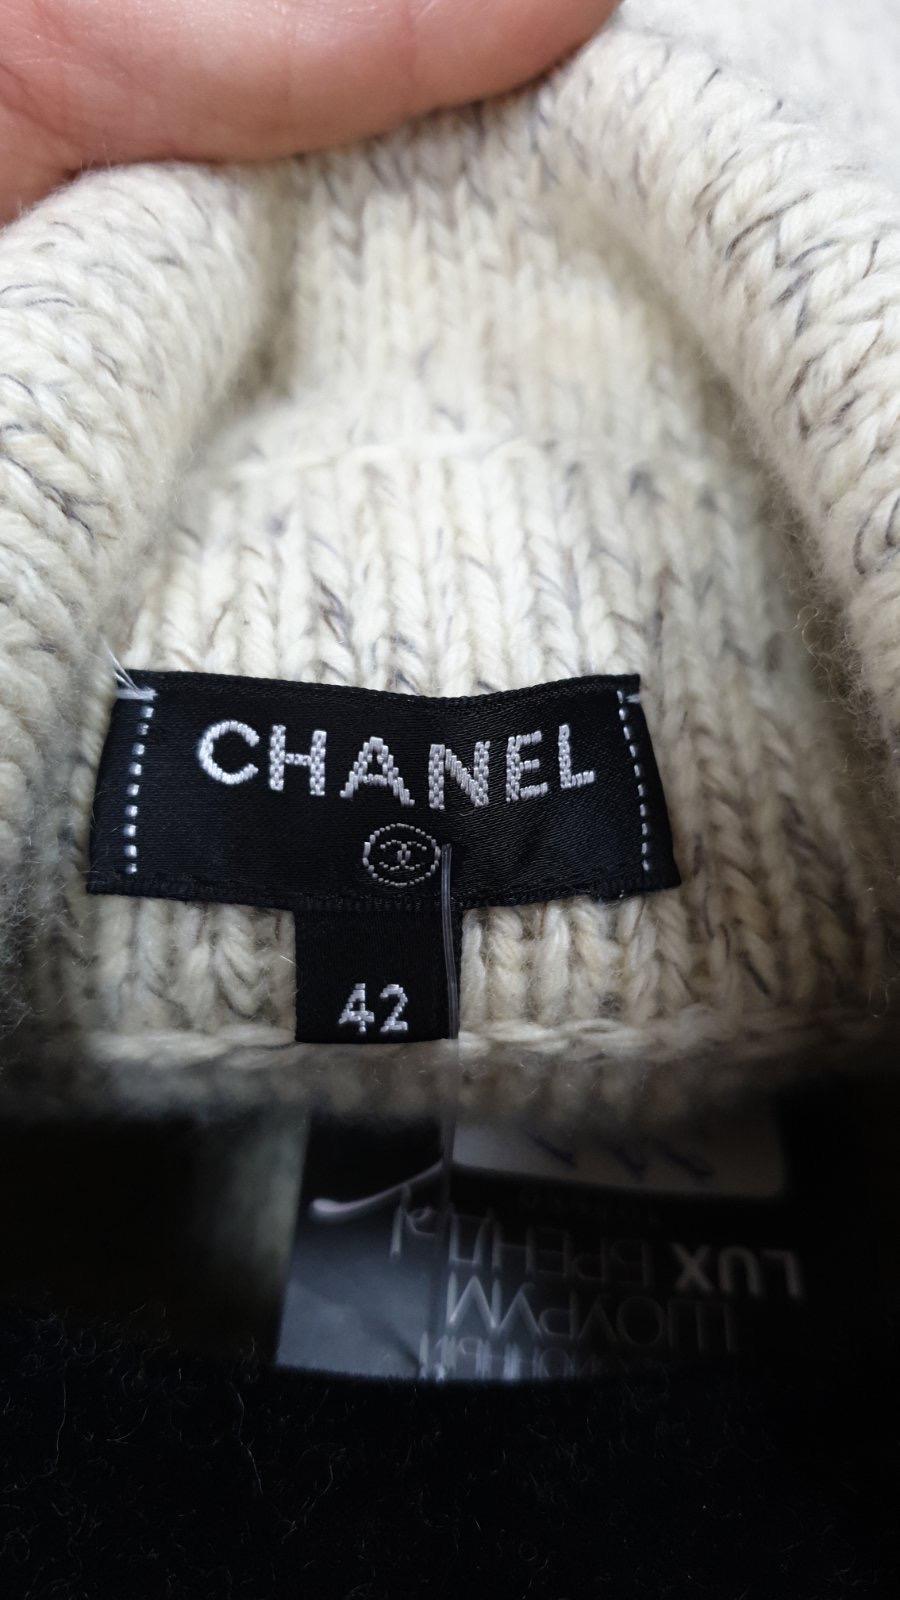 Chanel Pullover-Mantel aus einer Kaschmirmischung mit CC-Logo-Knöpfen.
 Sie ist mit einem Knopfverschluss vorne und 2 Taschen vorne ausgestattet. 
Dieser ist neu, nie getragen.

Gr.42 (fällt kleiner aus)
Aufhänger ist nicht enthalten